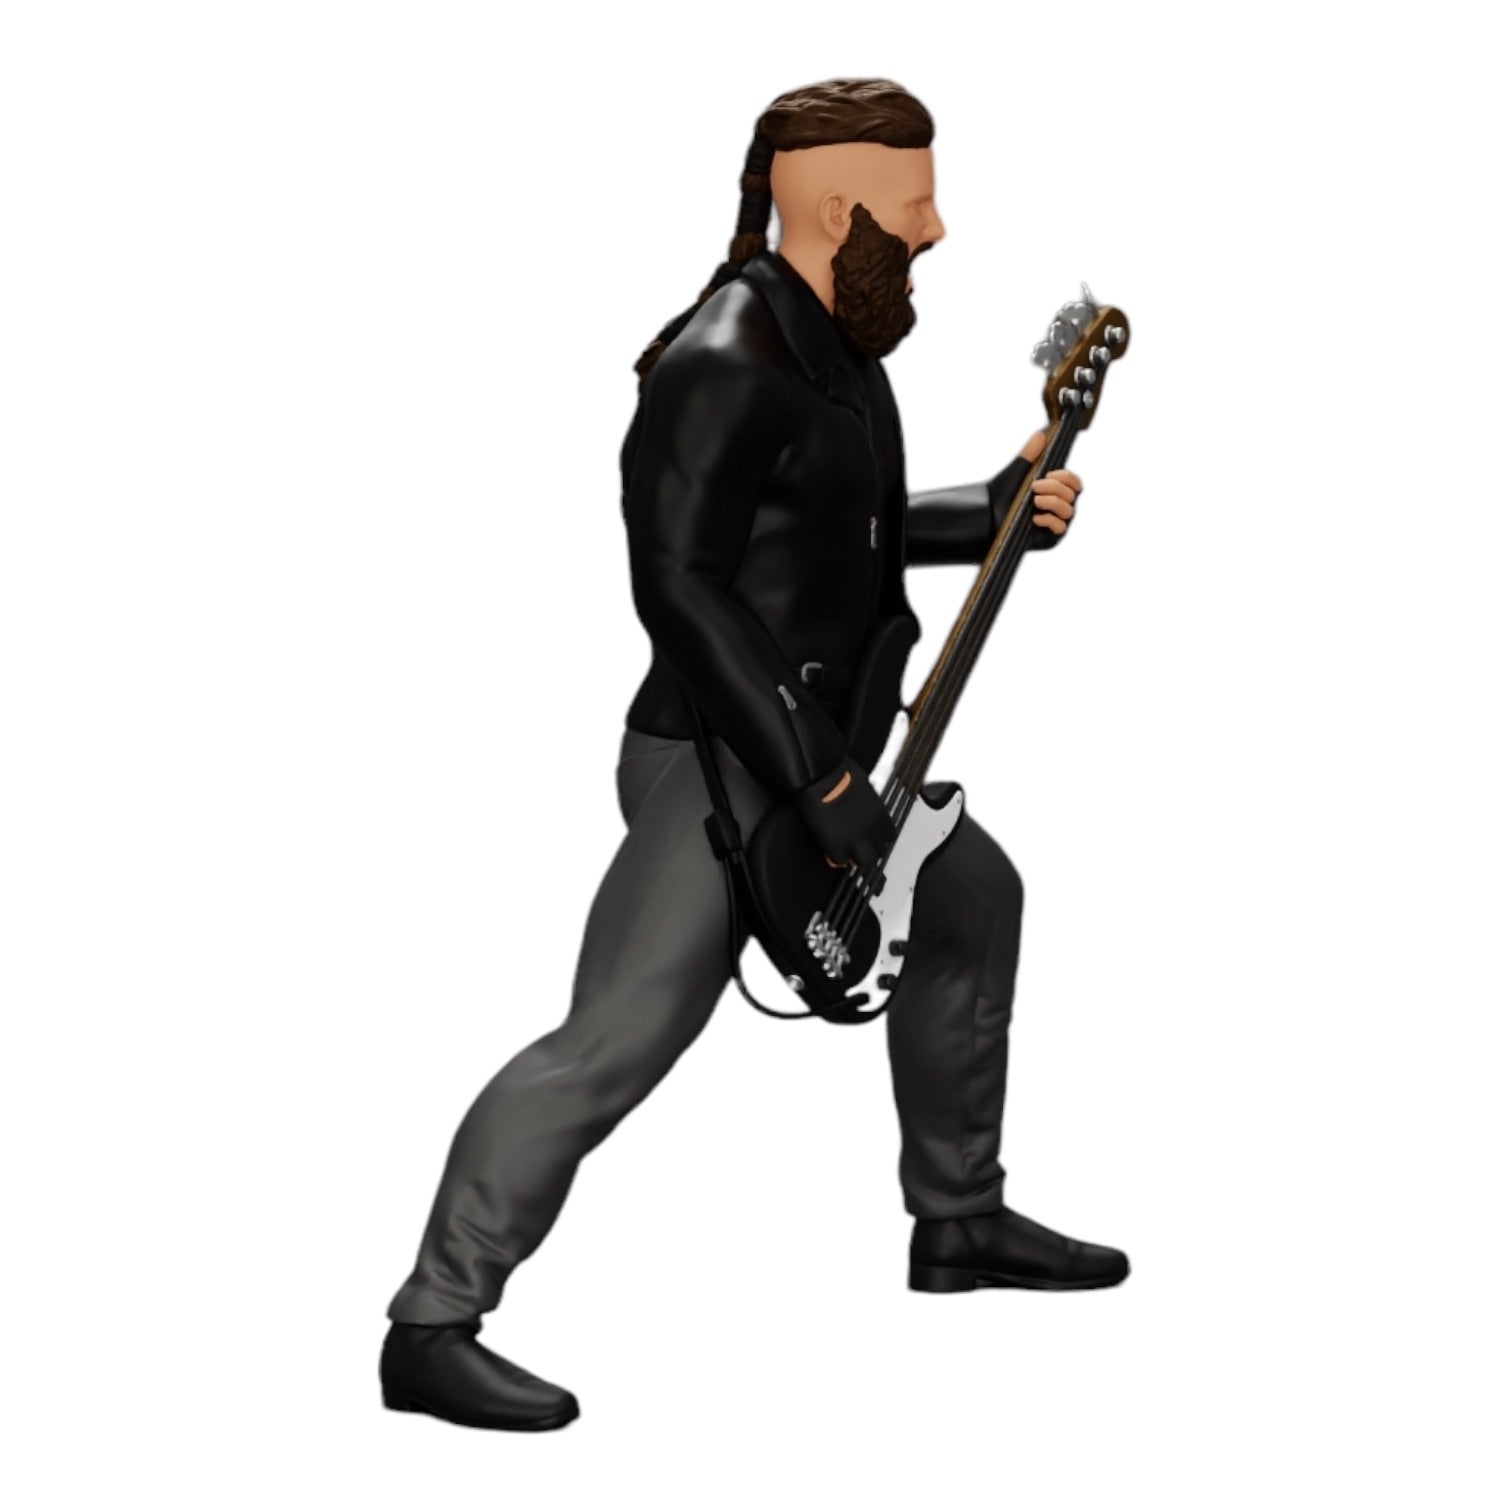 Diorama Modellbau Produktfoto 0: Rockstar spielt Bassgitarre in Lederjacke mit langen Haaren und Bart (Ref Nr. A12)